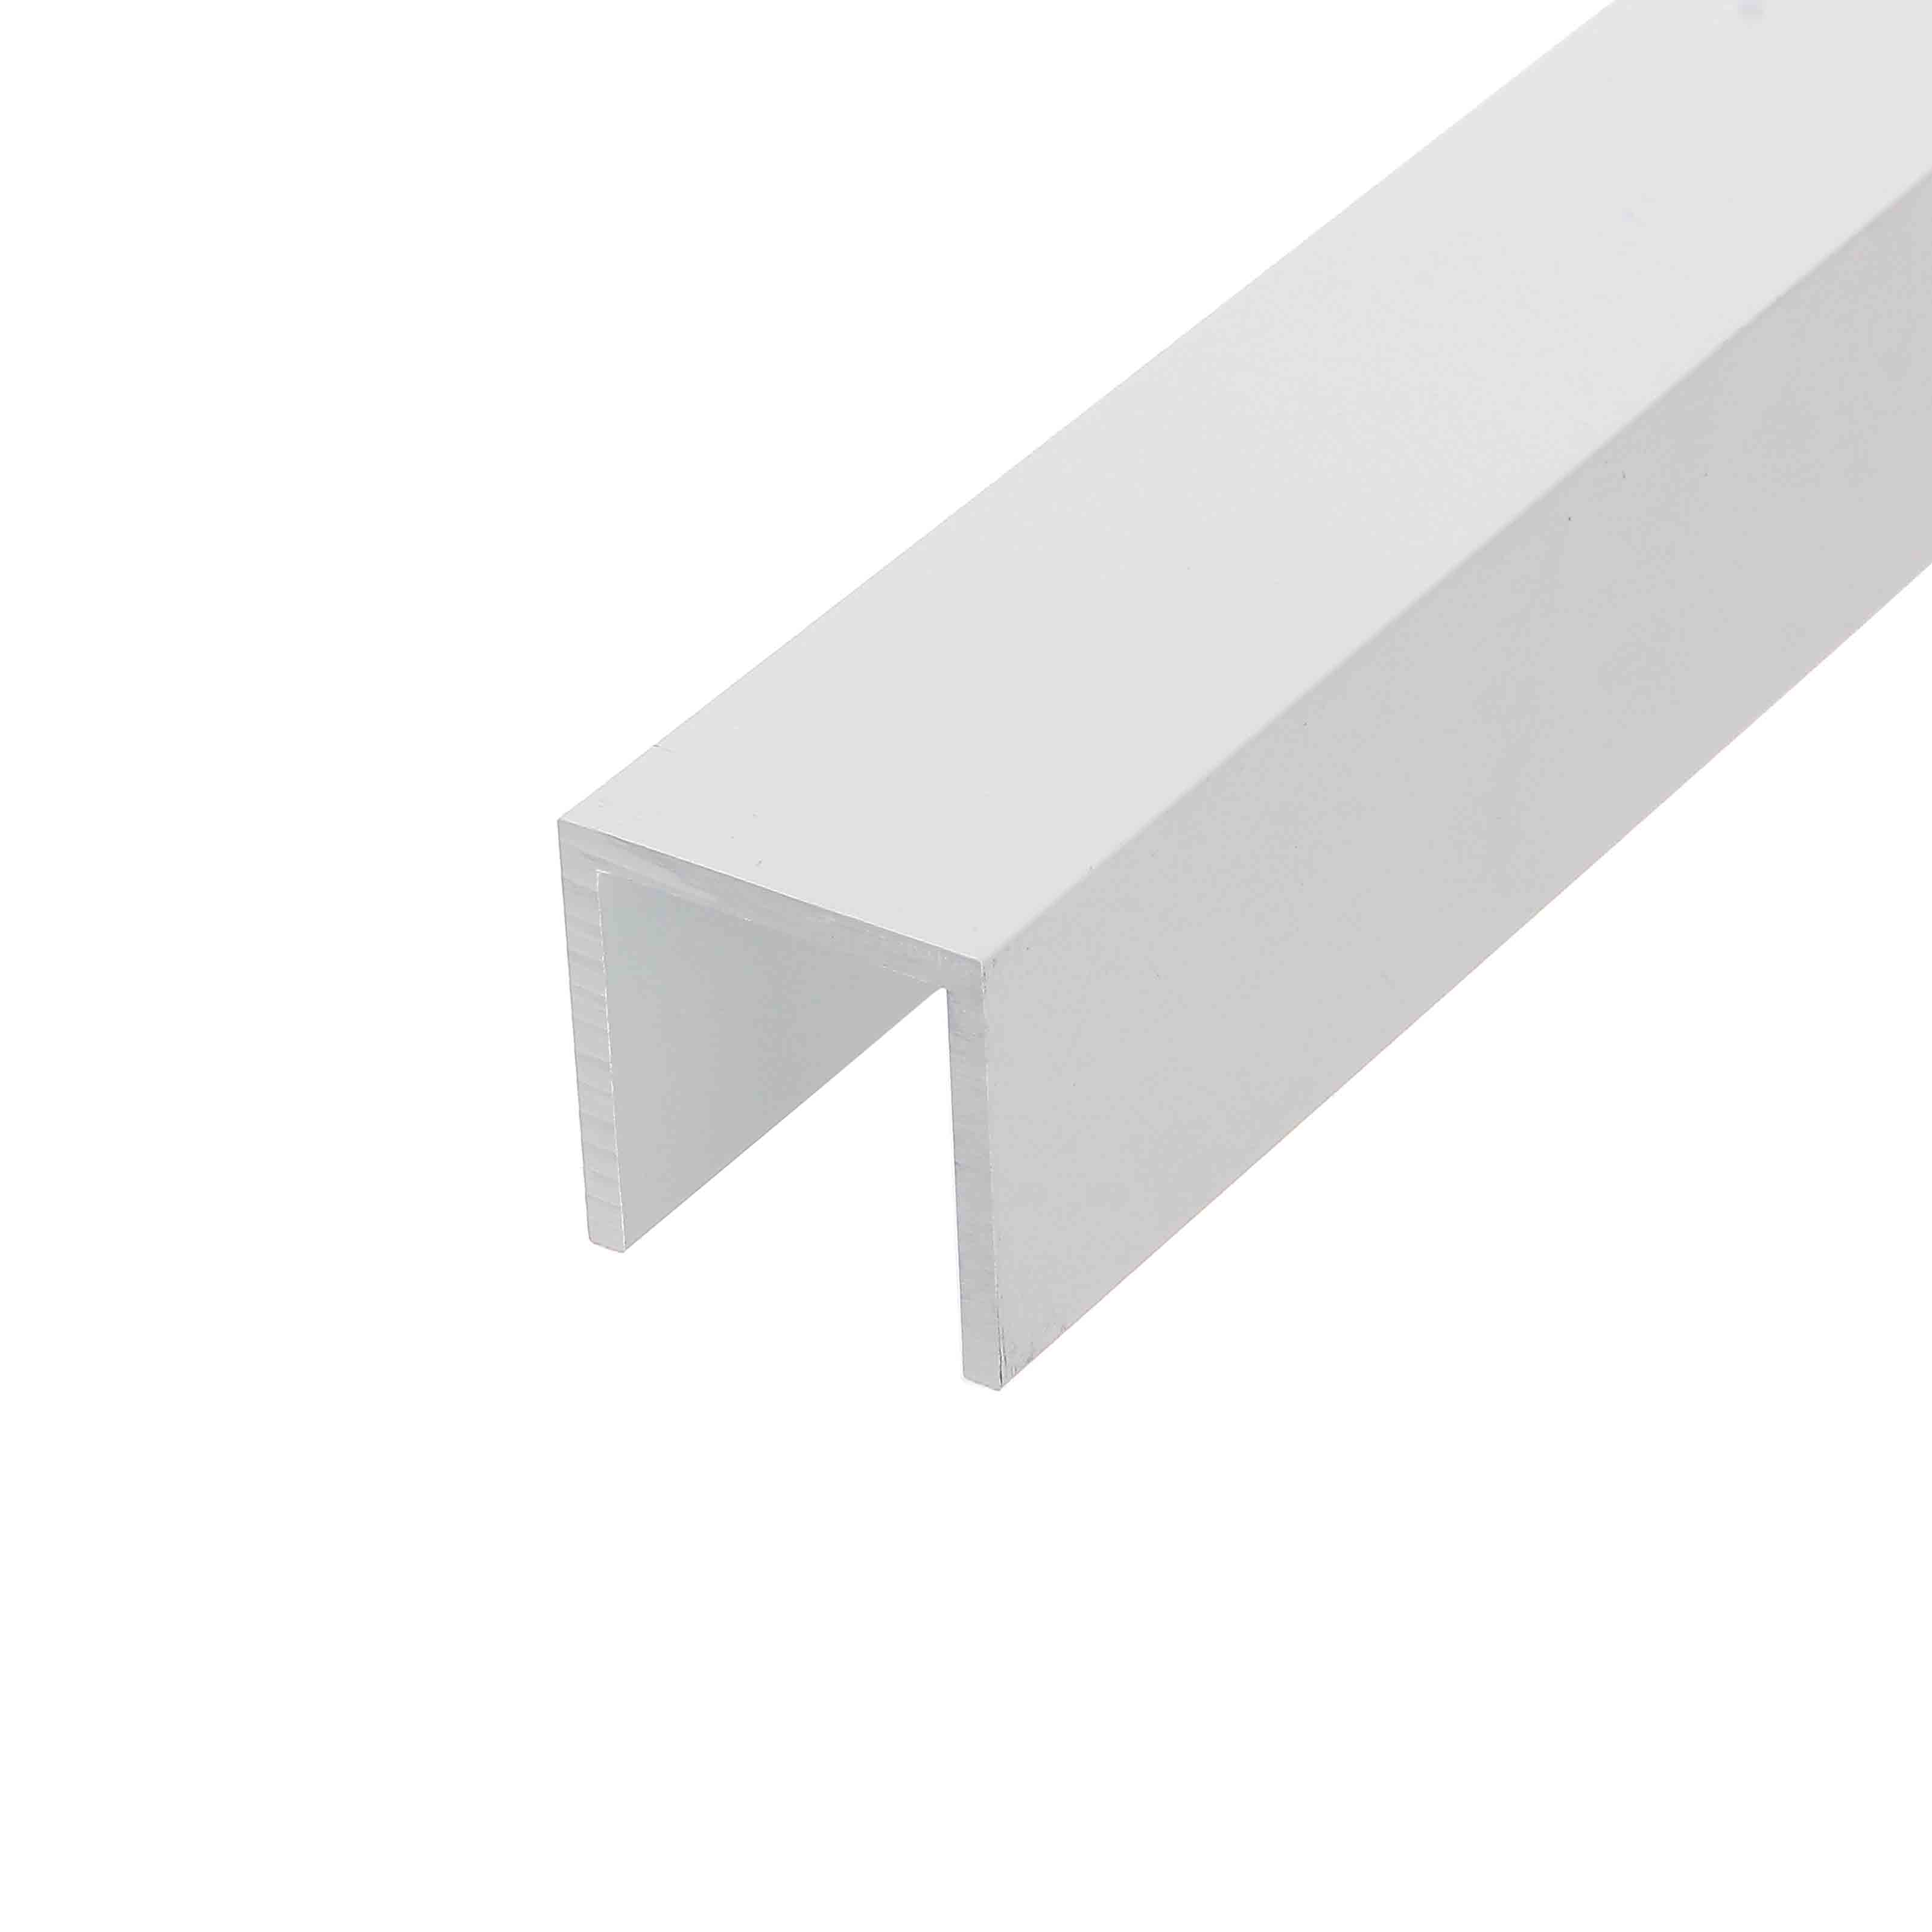 Aluminium U-Profil Schiene Weiß RAL 9016 25x25x25x2mm 2000mm WeißRAL9016 